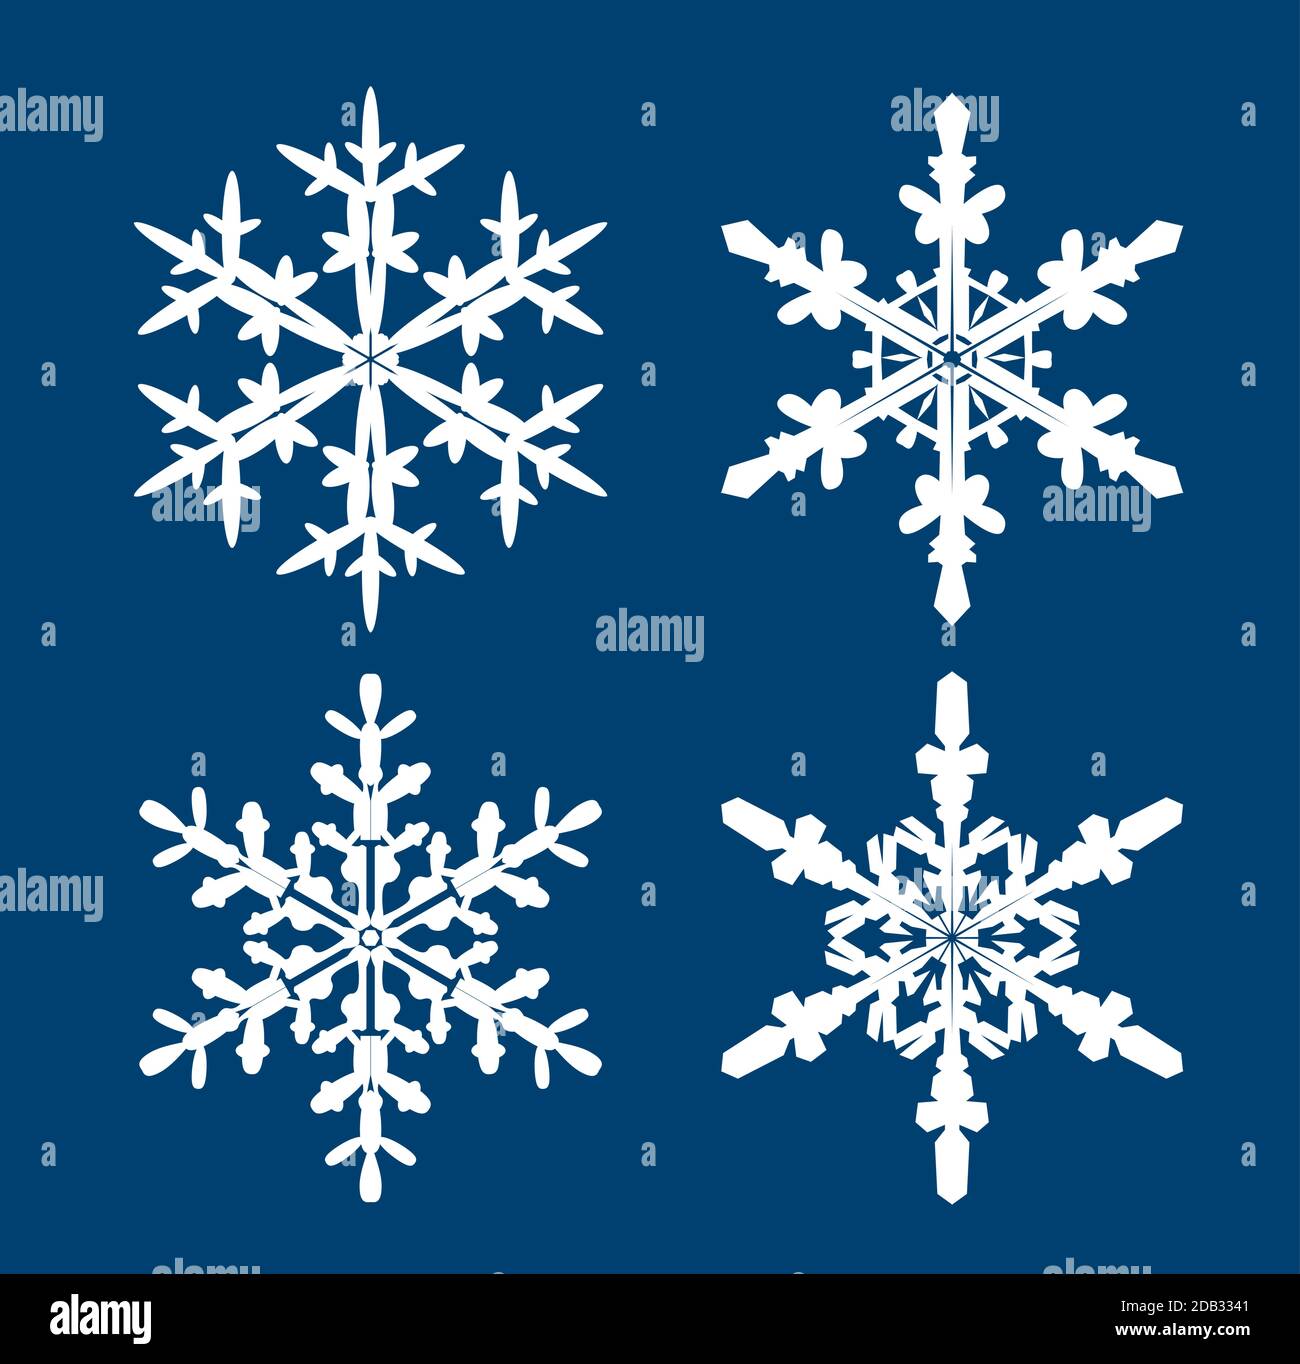 Sammlung von weißen Schneeflocken auf blauem Hintergrund. Vektor Illustration und Logo Design. Stock Vektor